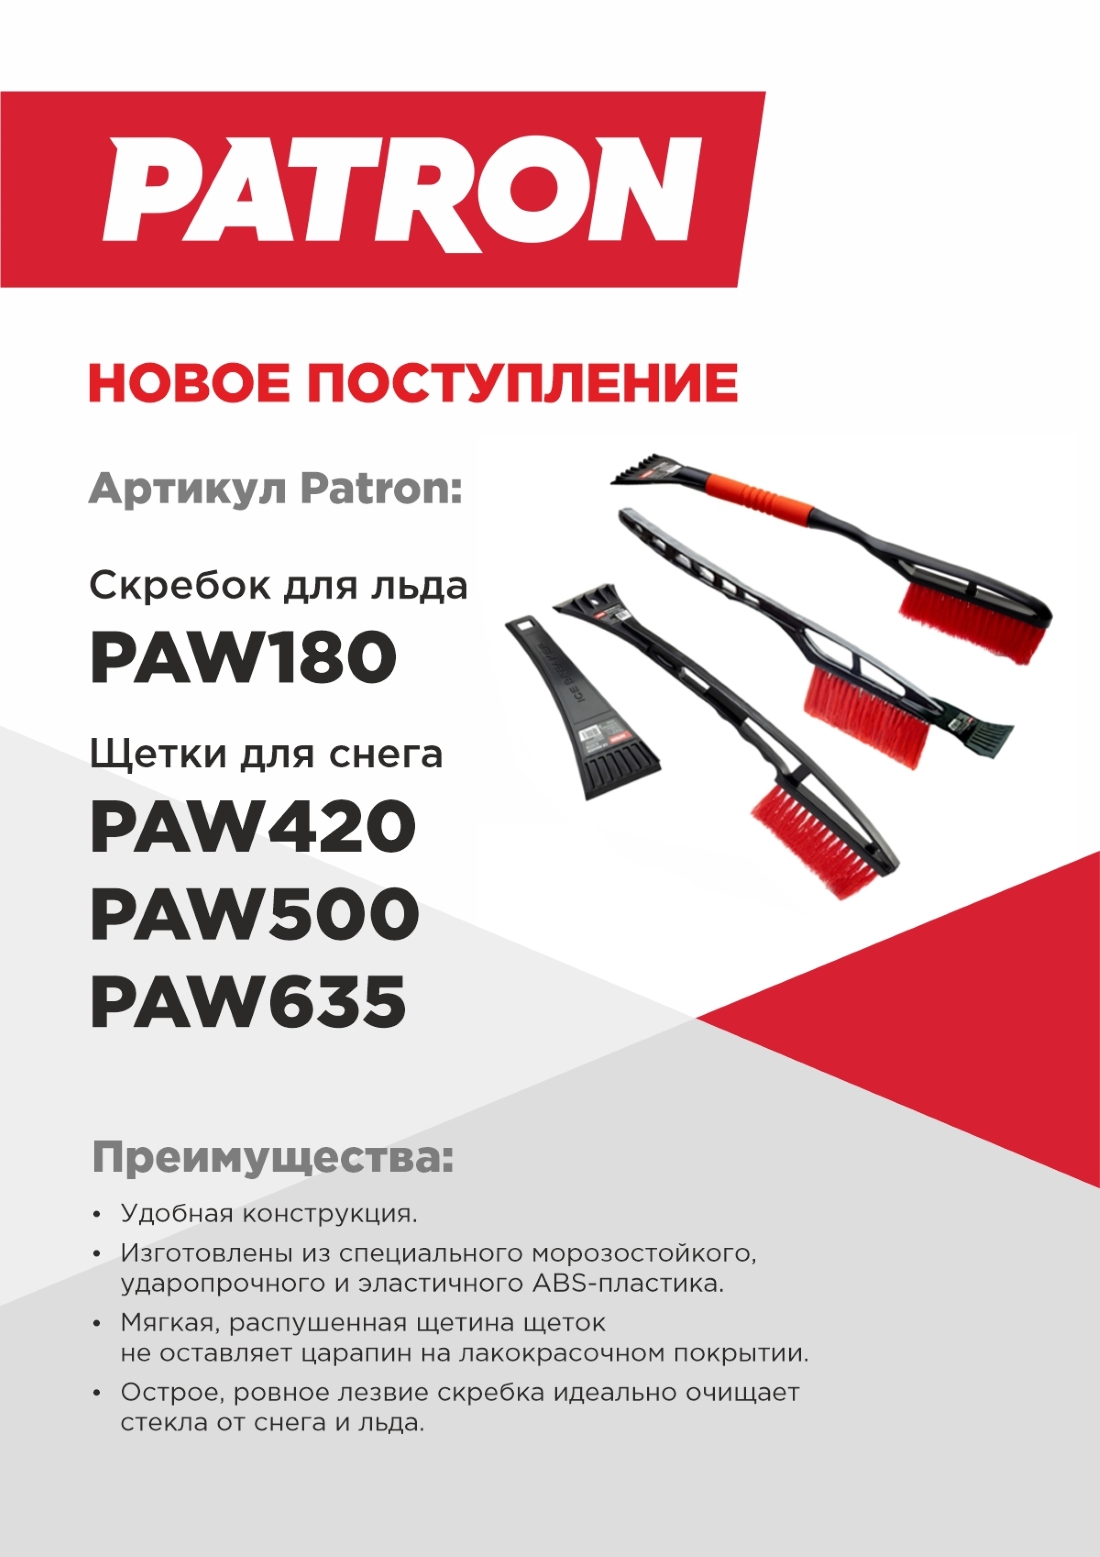 NEW_Patron_PAW_180_PAW500_PAW420_PW635_1